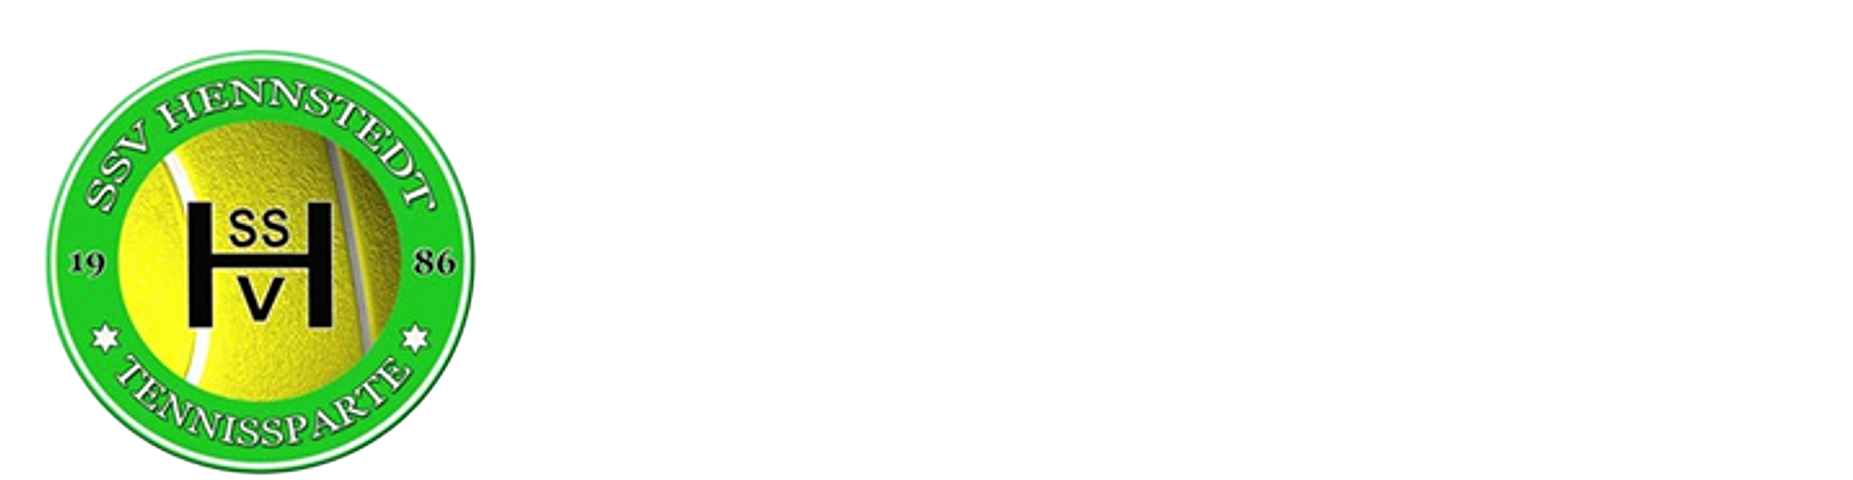 Die Tennissparte des SSV Hennstedt